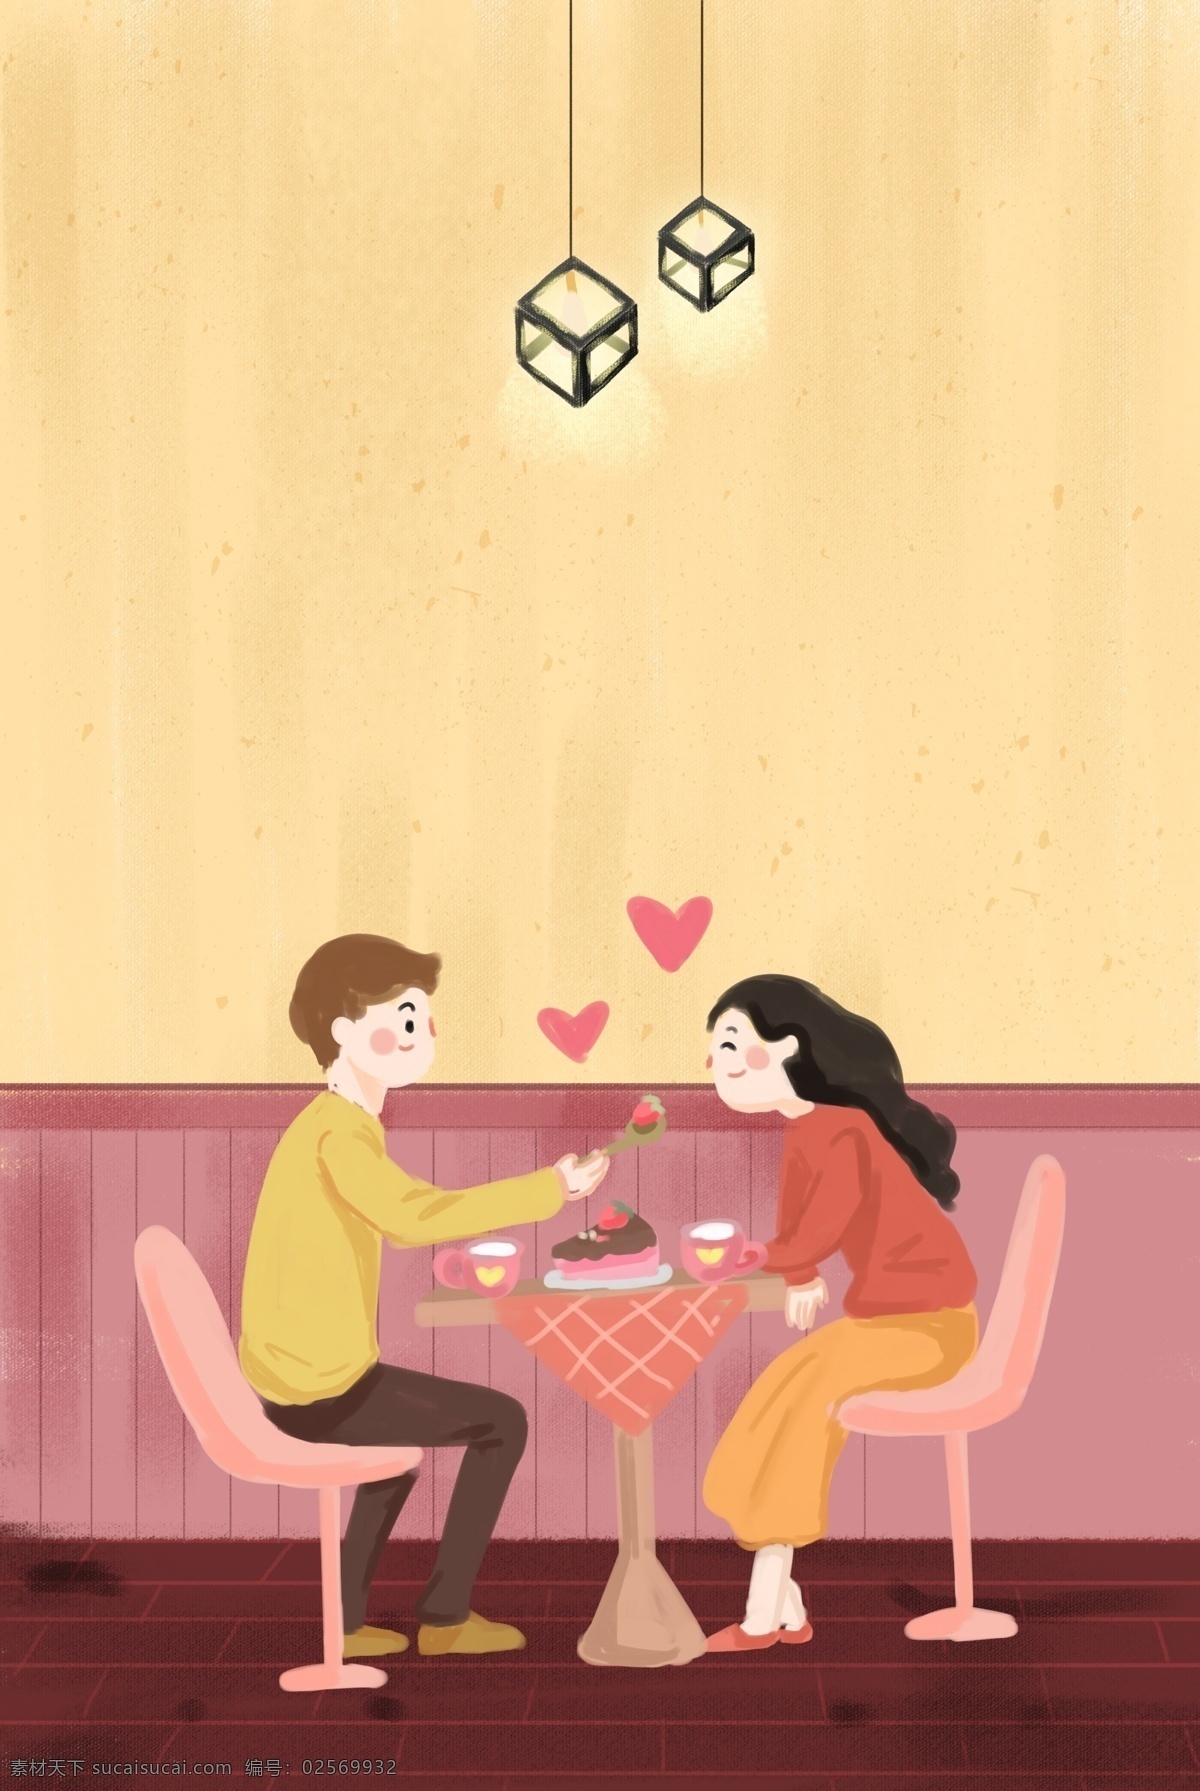 情人节 甜品 店 约会 情侣 插画 海报 食物 温馨 室内 插画风 促销海报